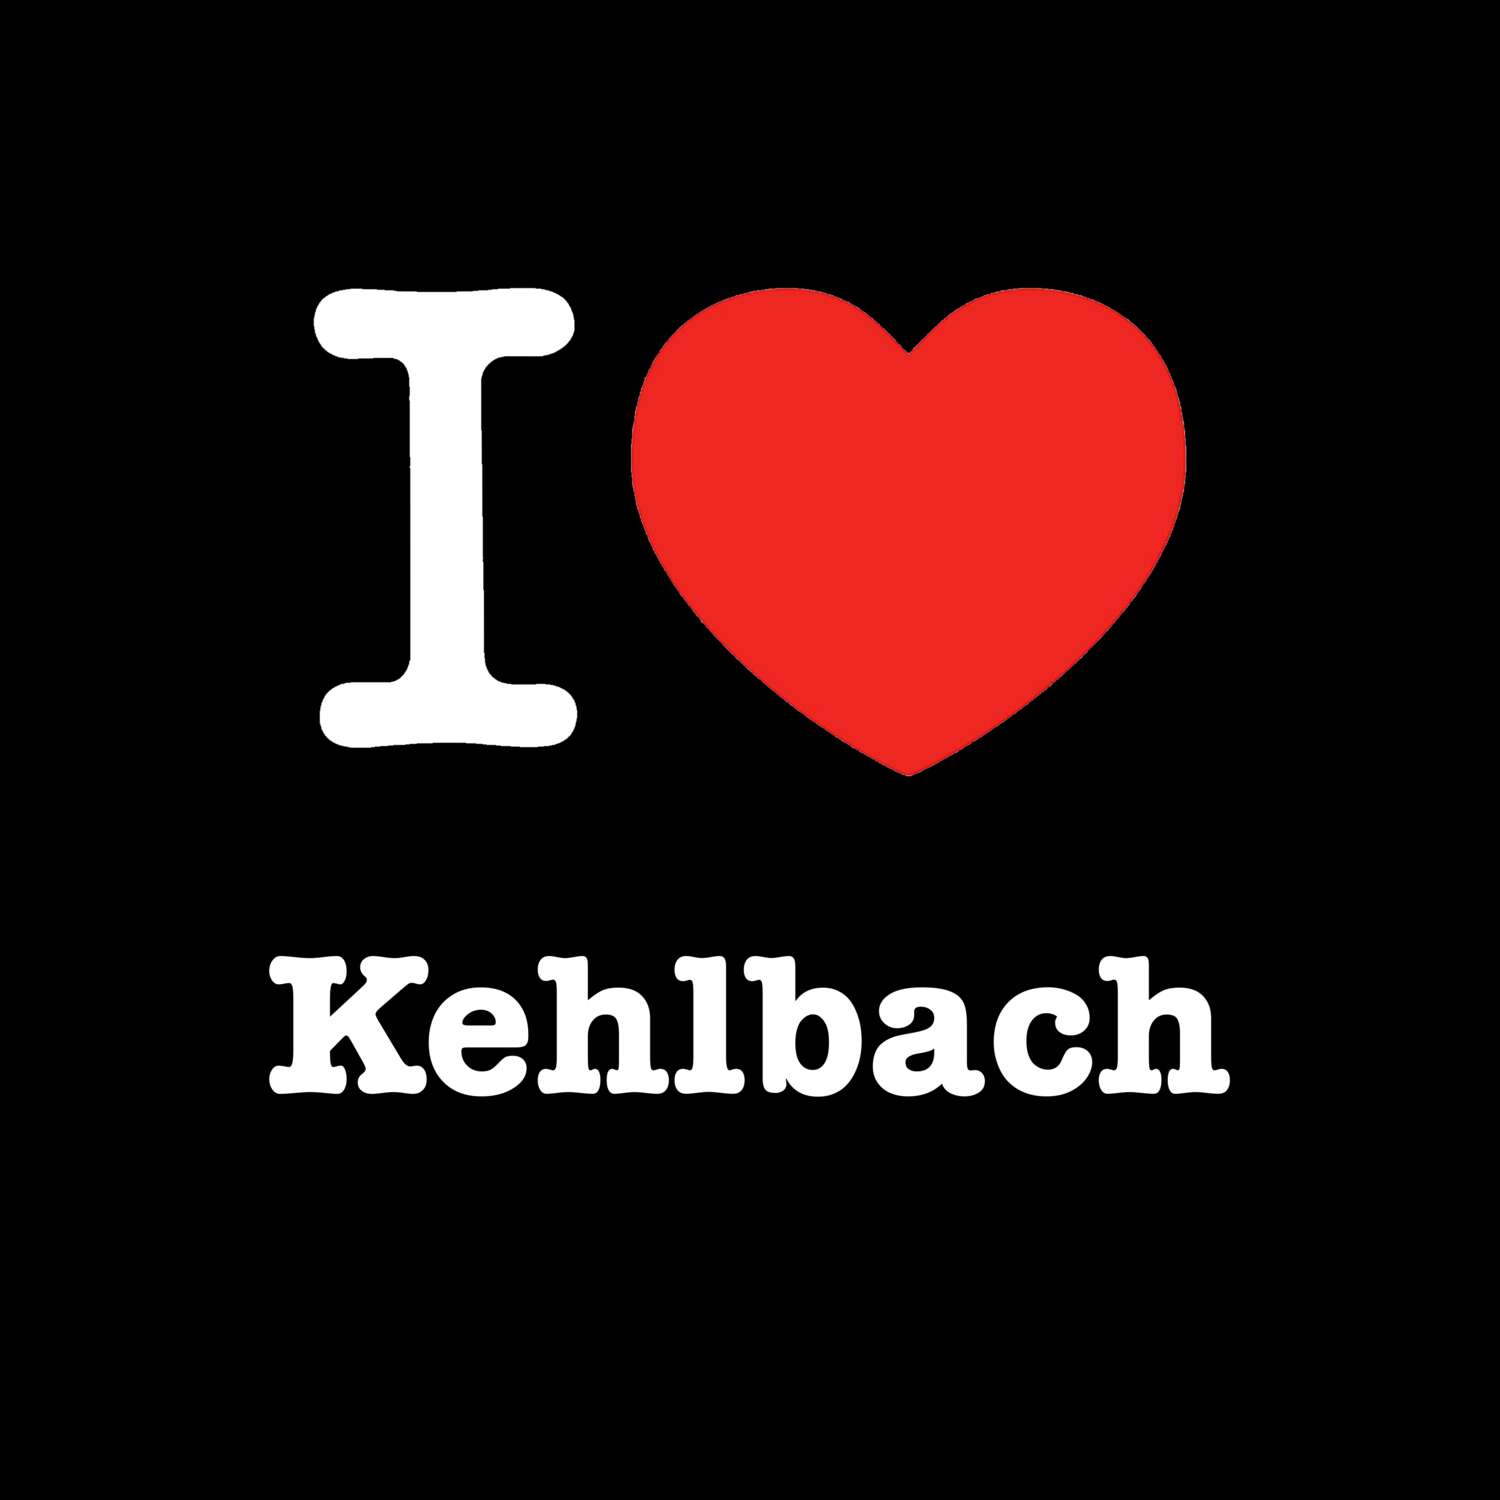 Kehlbach T-Shirt »I love«